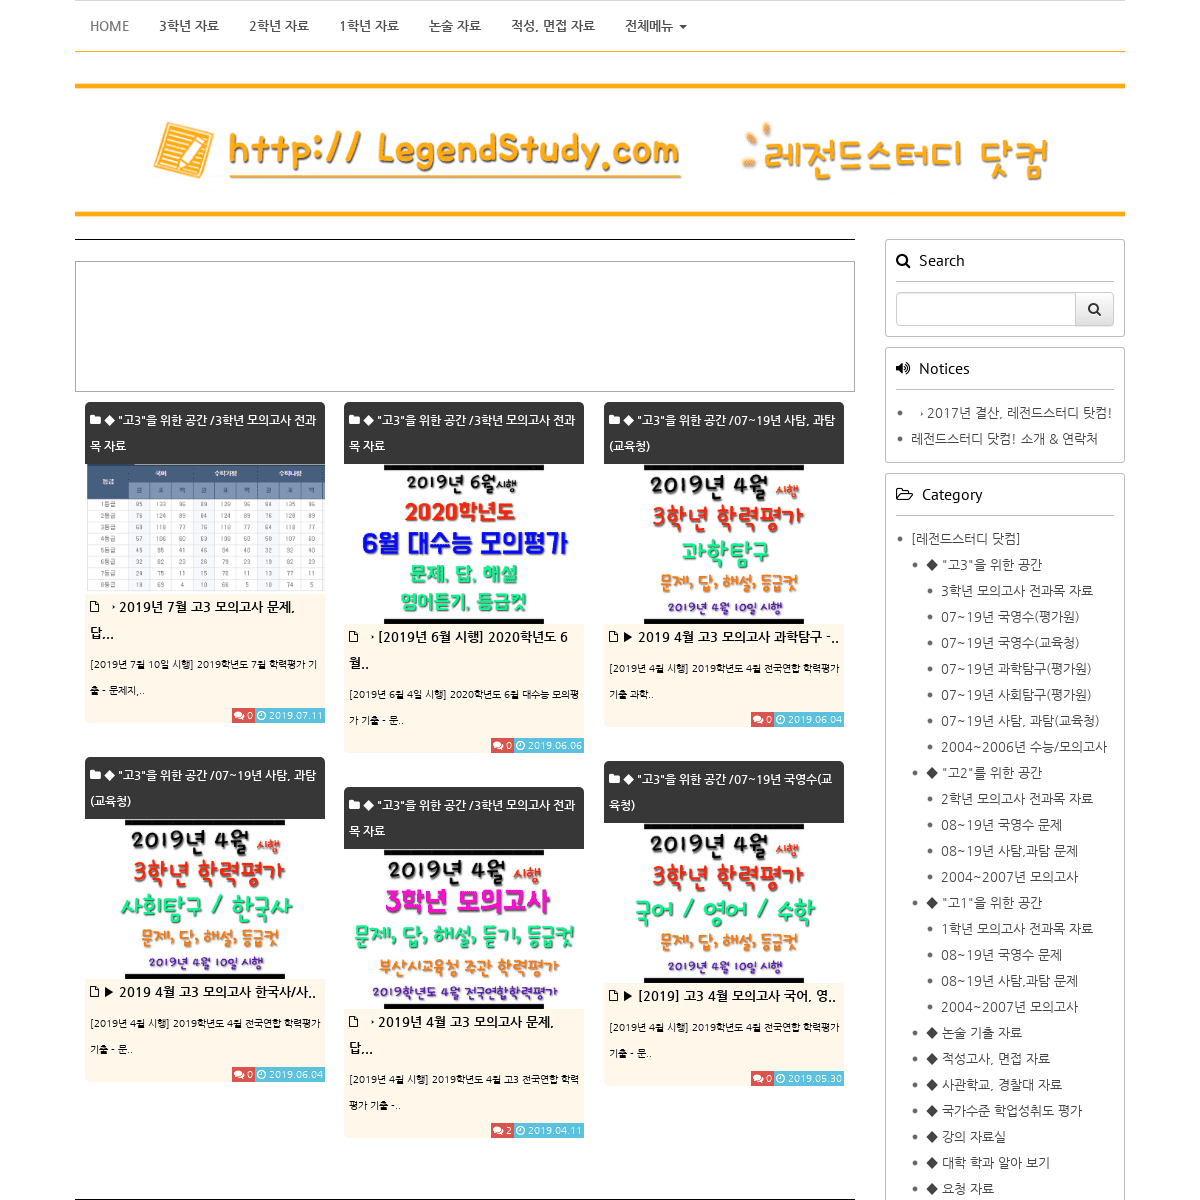 레전드스터디 닷컴 | Legendstudy.com